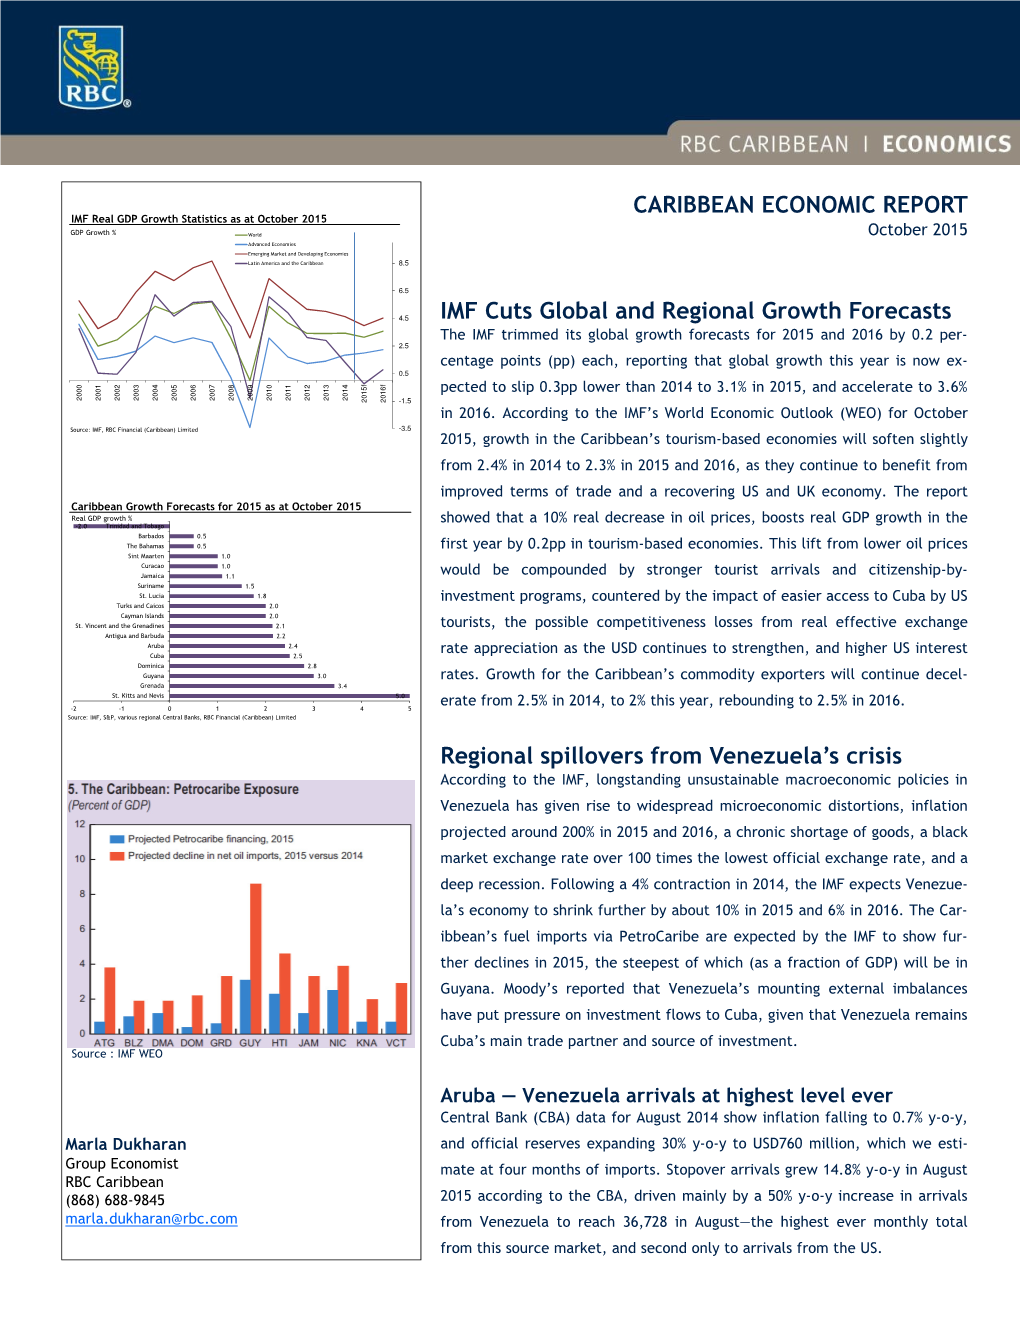 RBC – Caribbean Economic Report Oct 2015